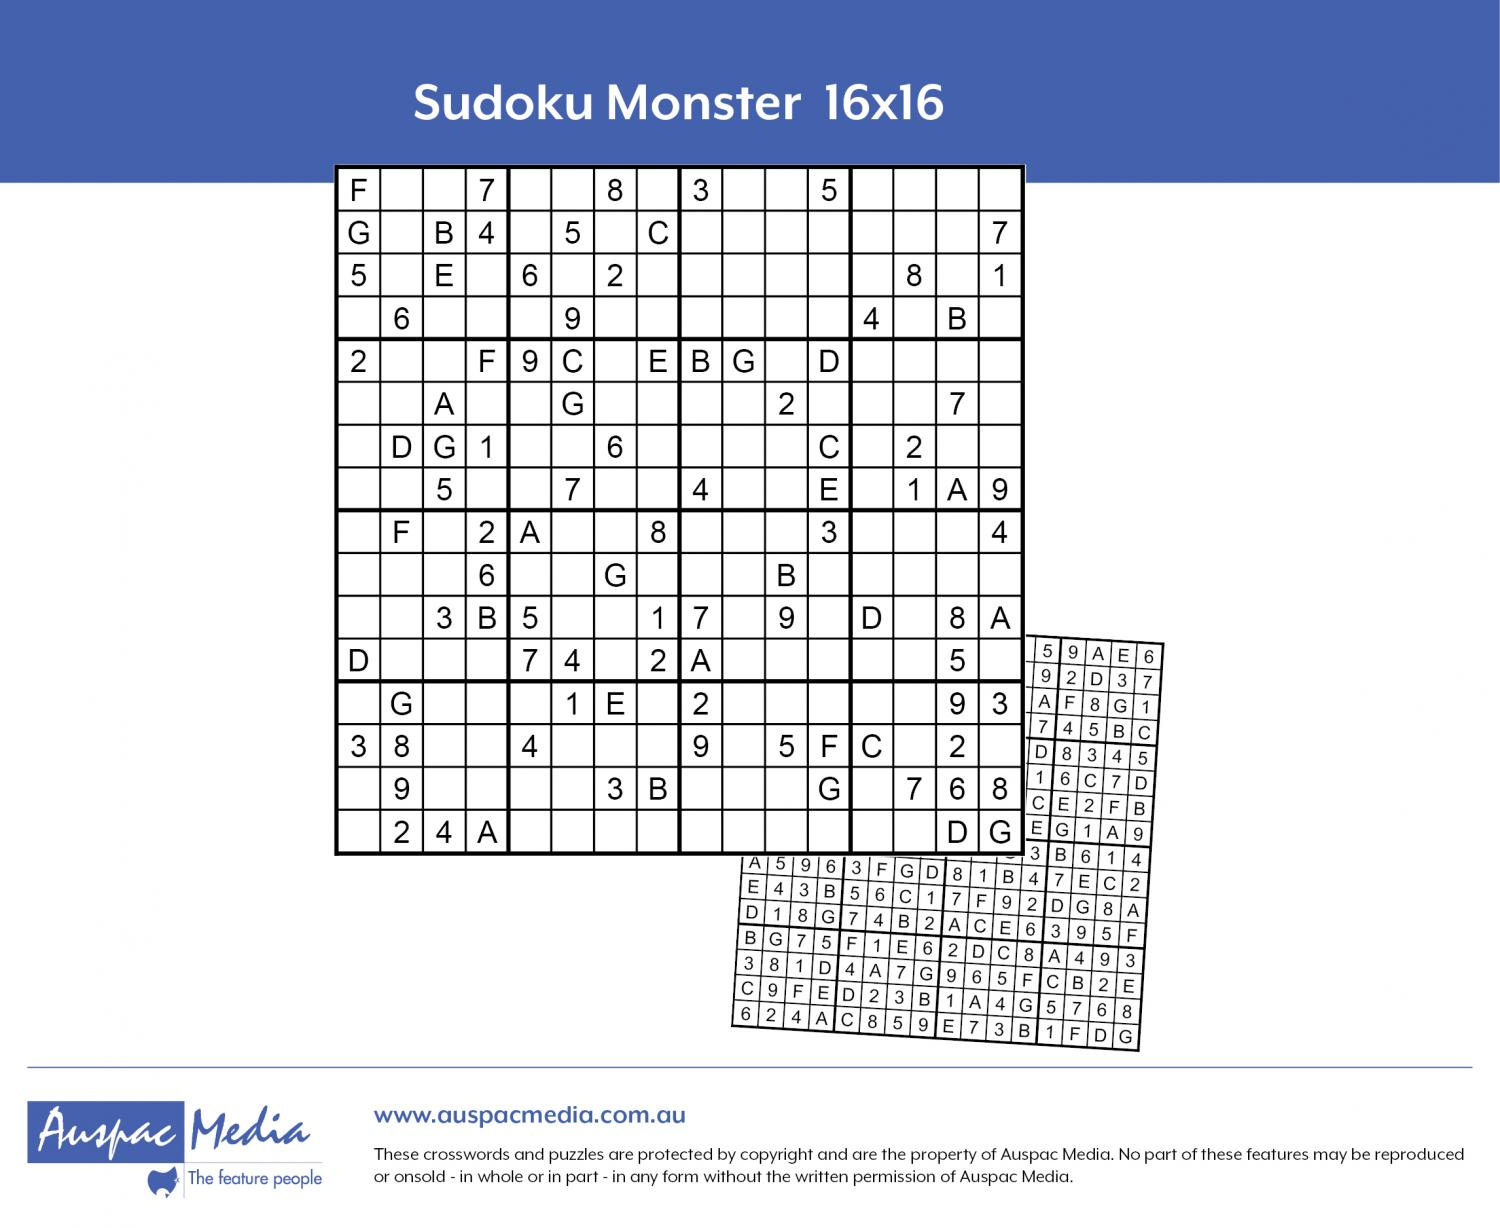 Sudoku Monster 16x16